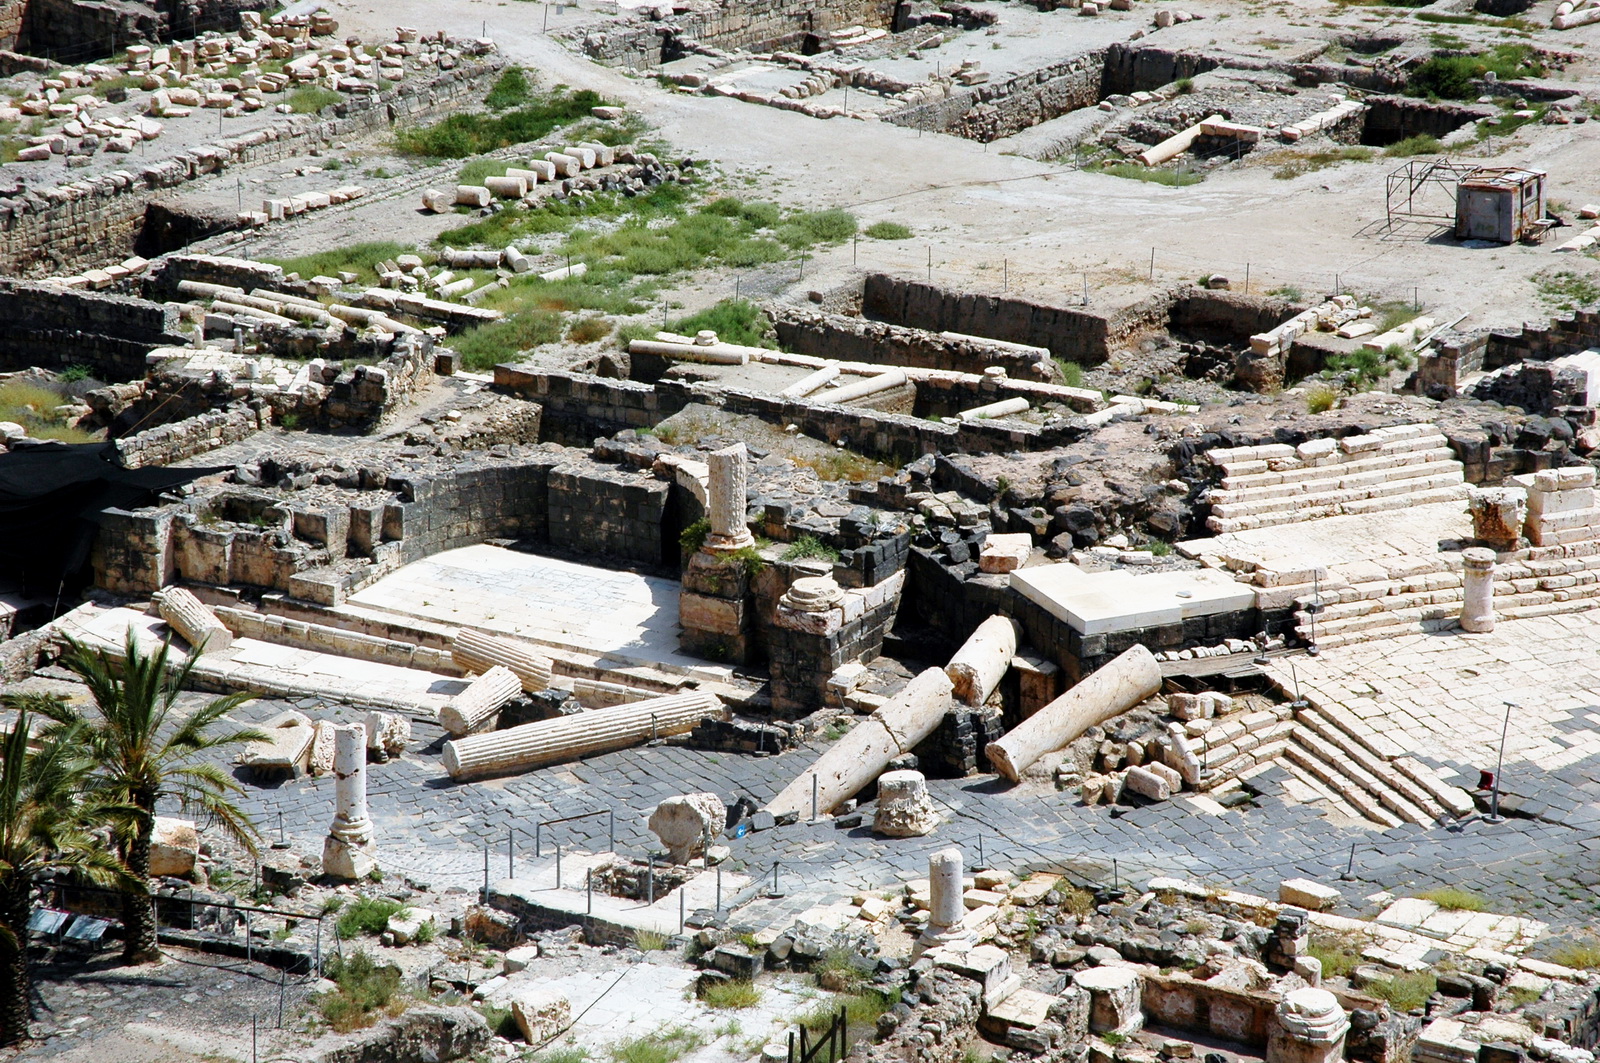 בית שאן - צומת הרחובות פלאדיוס וסילבאנוס, וההרס האוטנטי שנגרם ברעידת אדמה